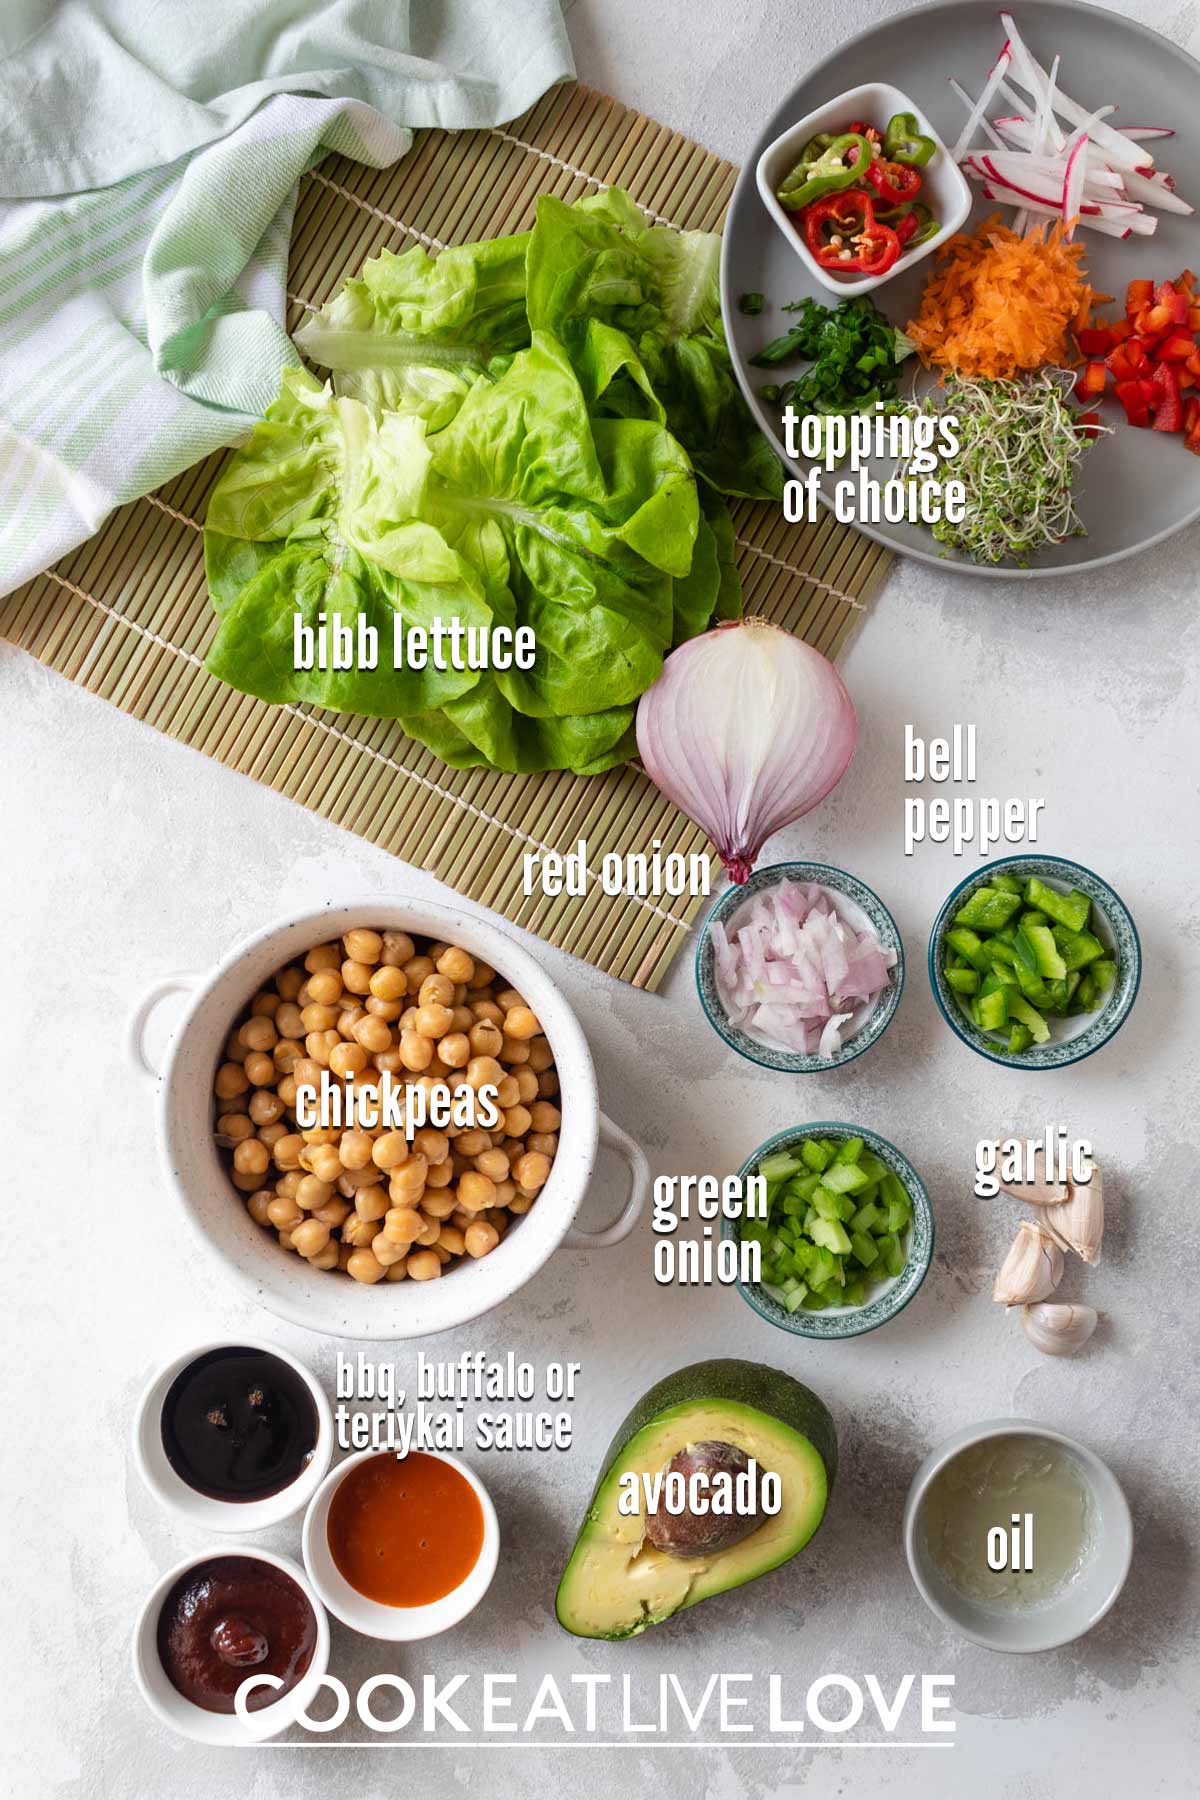 Ingredients to make vegan lettuce wraps no tofu.